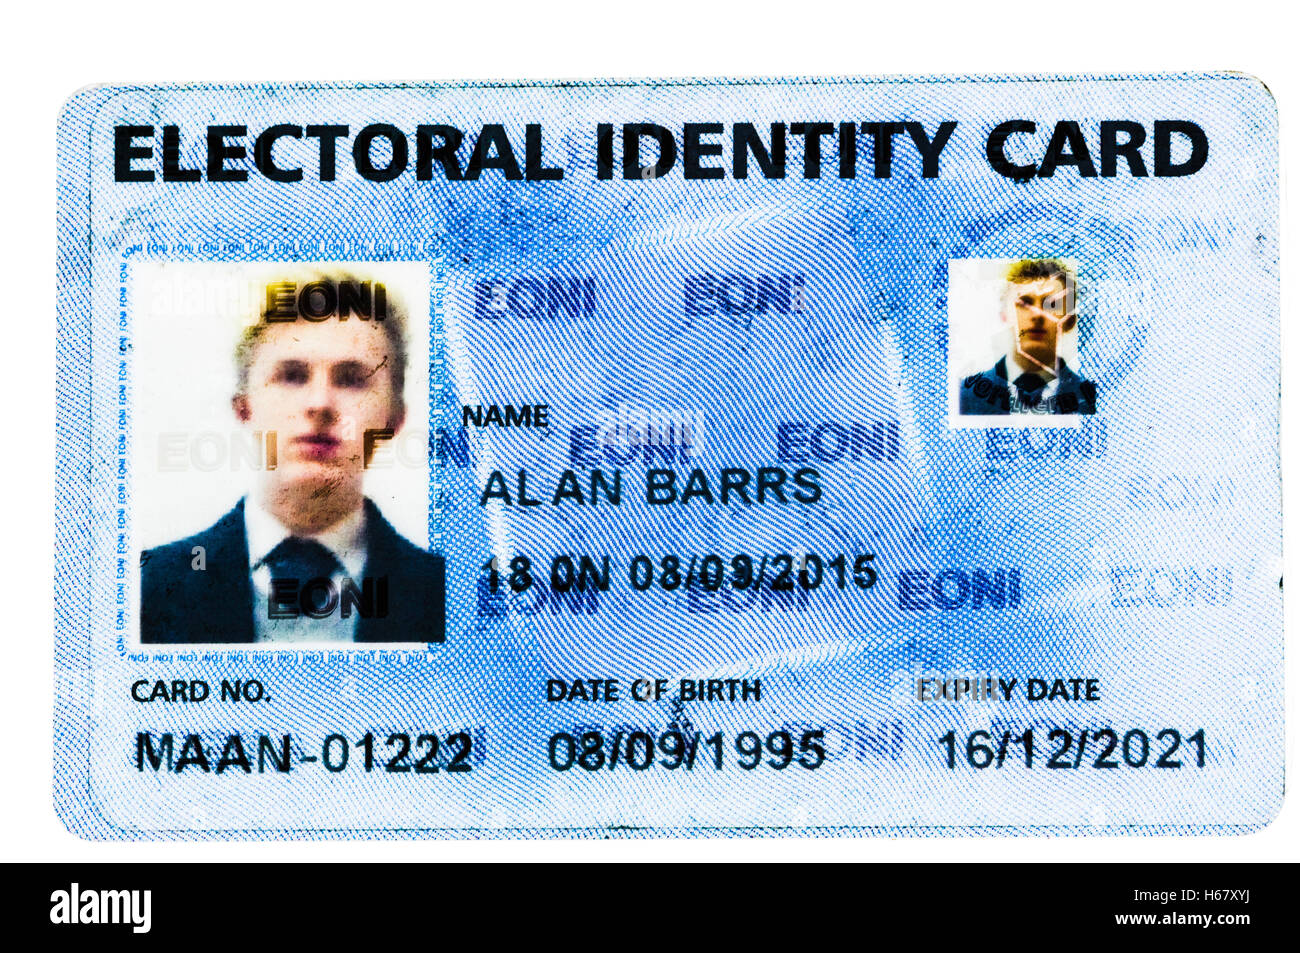 Identificare elettorale Card da eoni, Irlanda del Nord Foto Stock